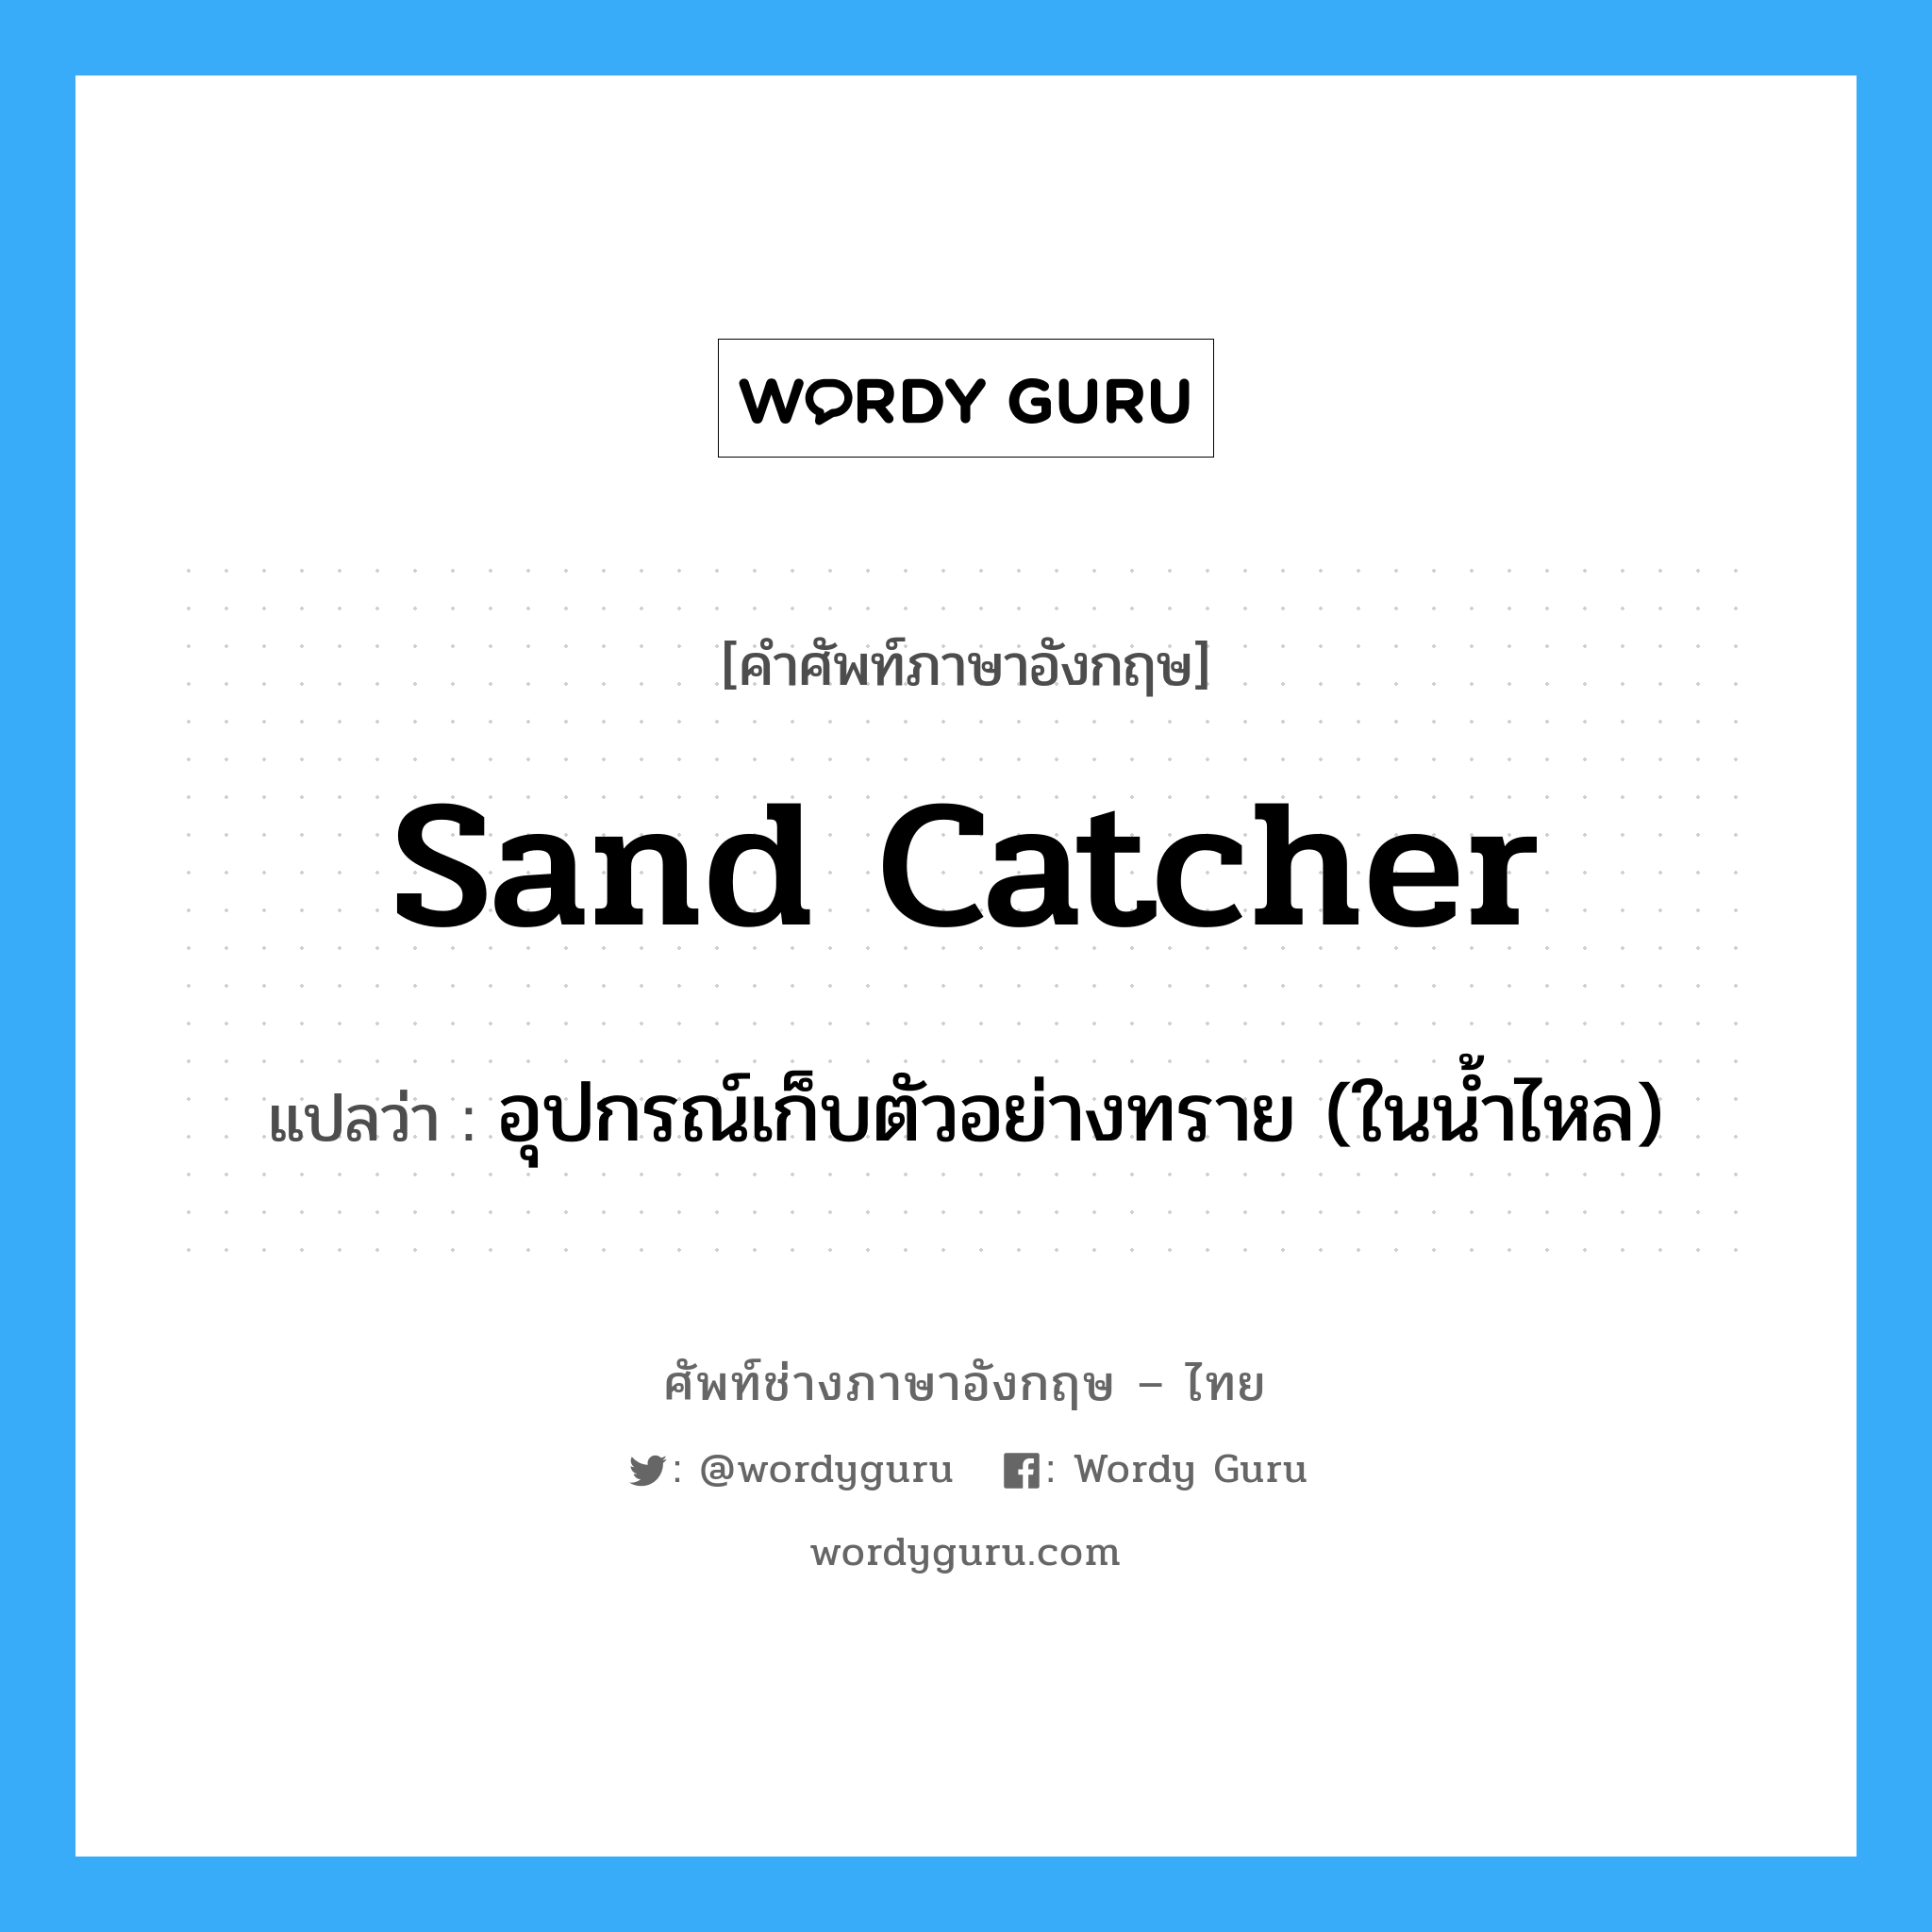 sand catcher แปลว่า?, คำศัพท์ช่างภาษาอังกฤษ - ไทย sand catcher คำศัพท์ภาษาอังกฤษ sand catcher แปลว่า อุปกรณ์เก็บตัวอย่างทราย (ในน้ำไหล)